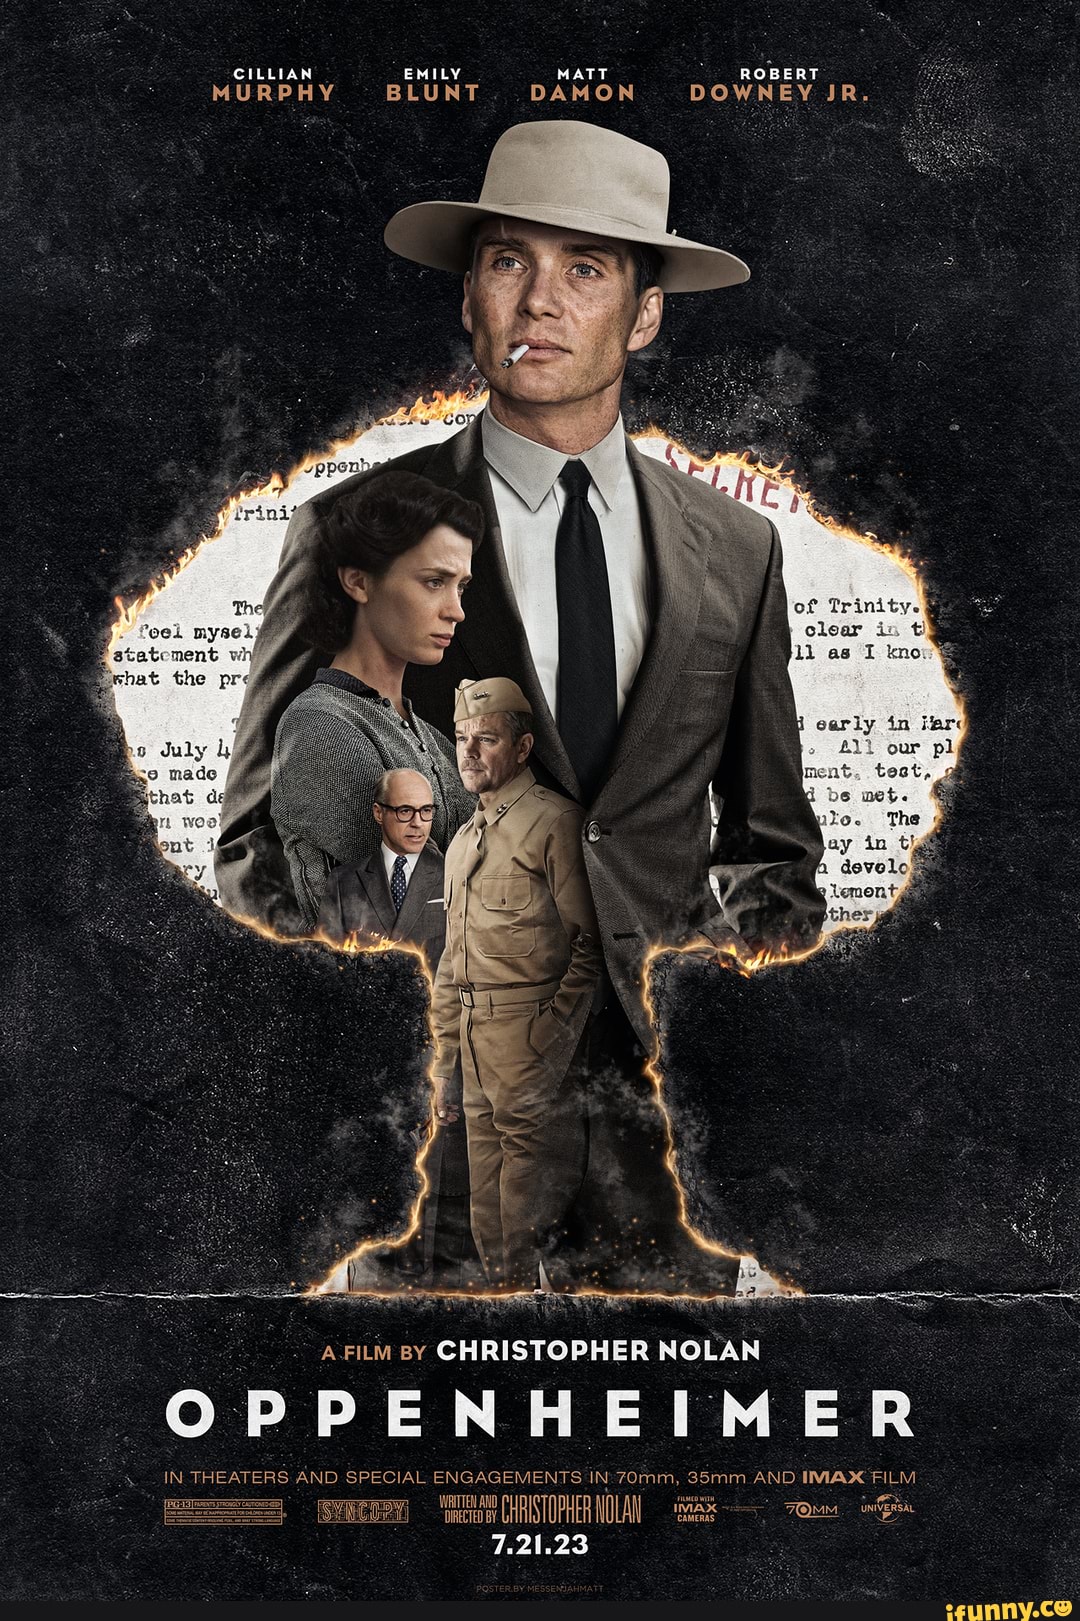 Fan Poster Wallpaper Featuring Cillian Murphy Emily Blunt Matt Damon And Robert Downey Jr